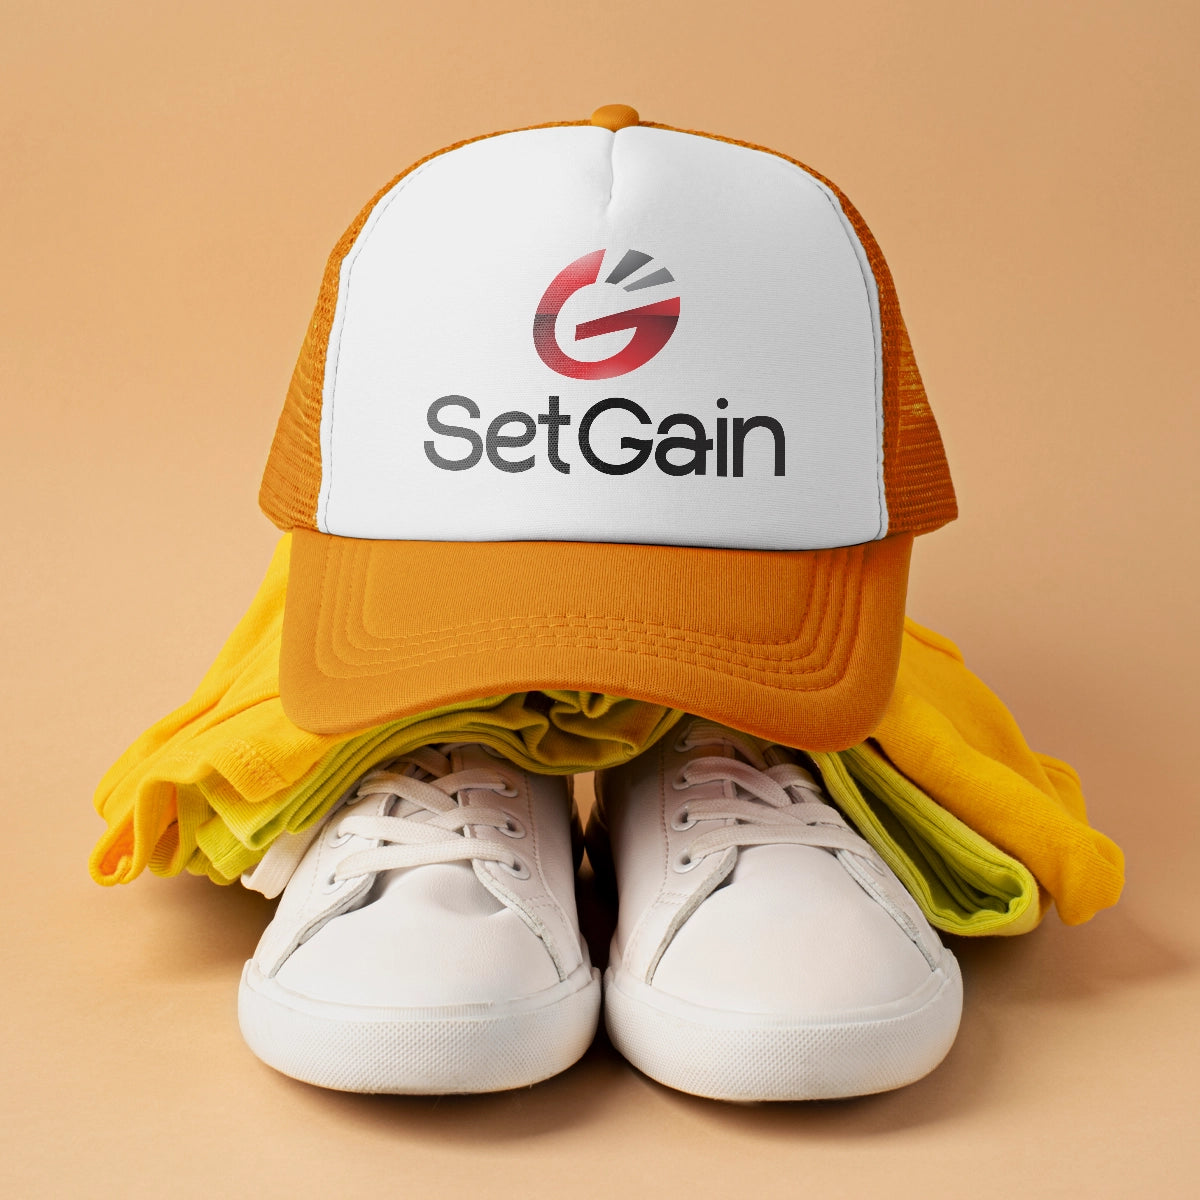 setgain.com